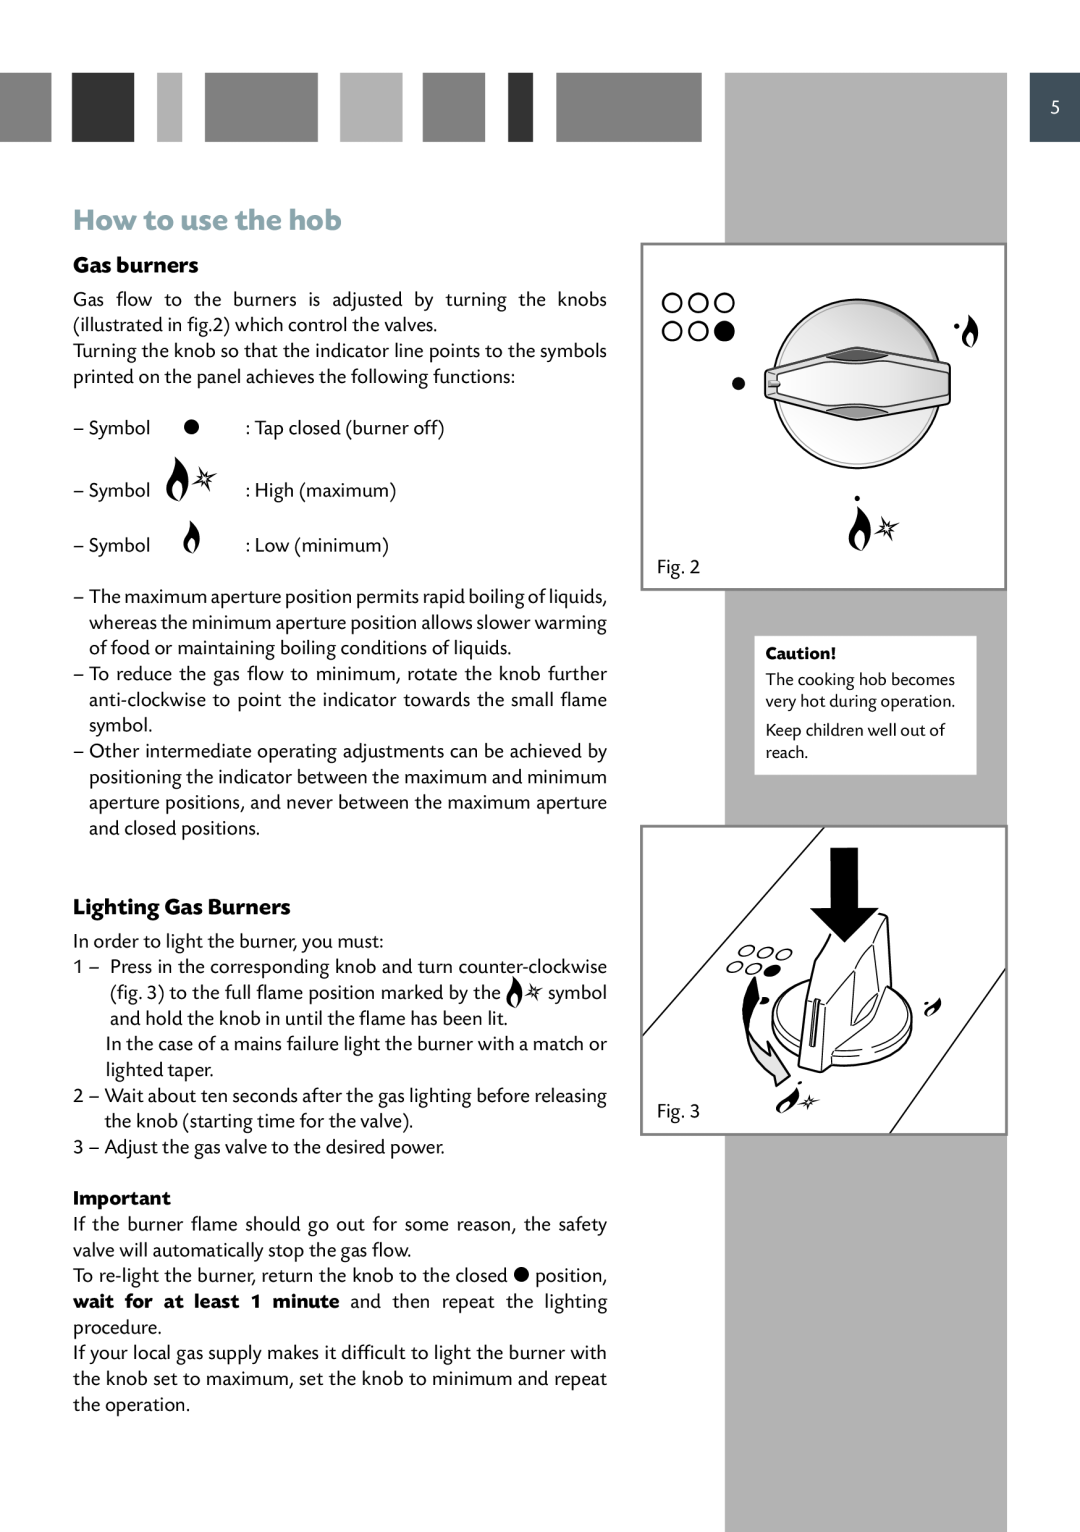 CDA HCG 931 manual How to use the hob, Gas burners, Lighting Gas Burners 